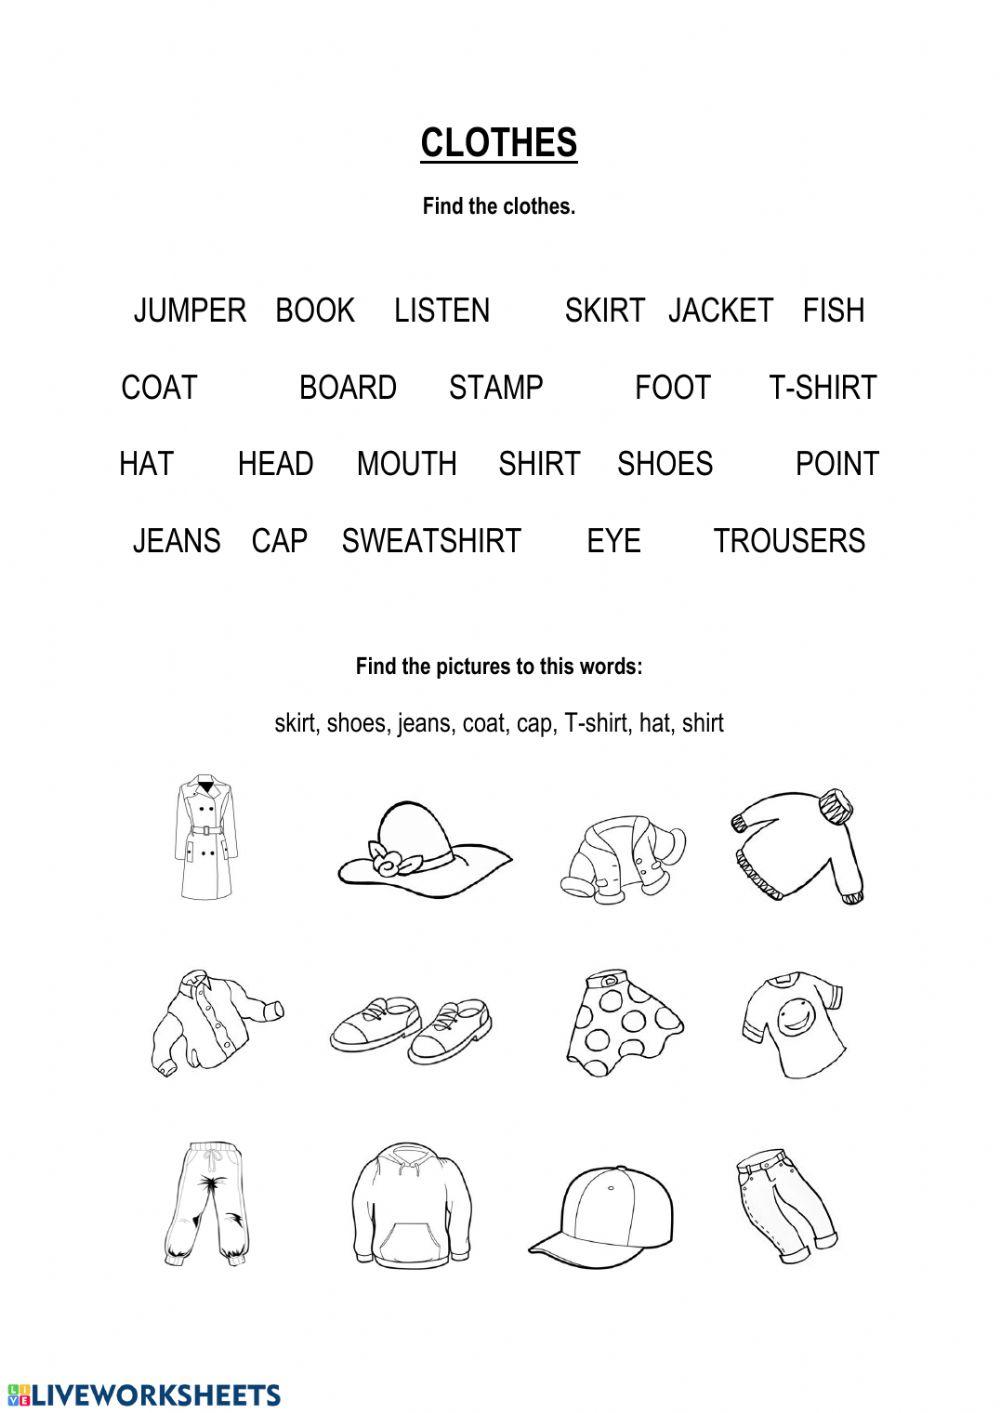 Clothes - vocabulary